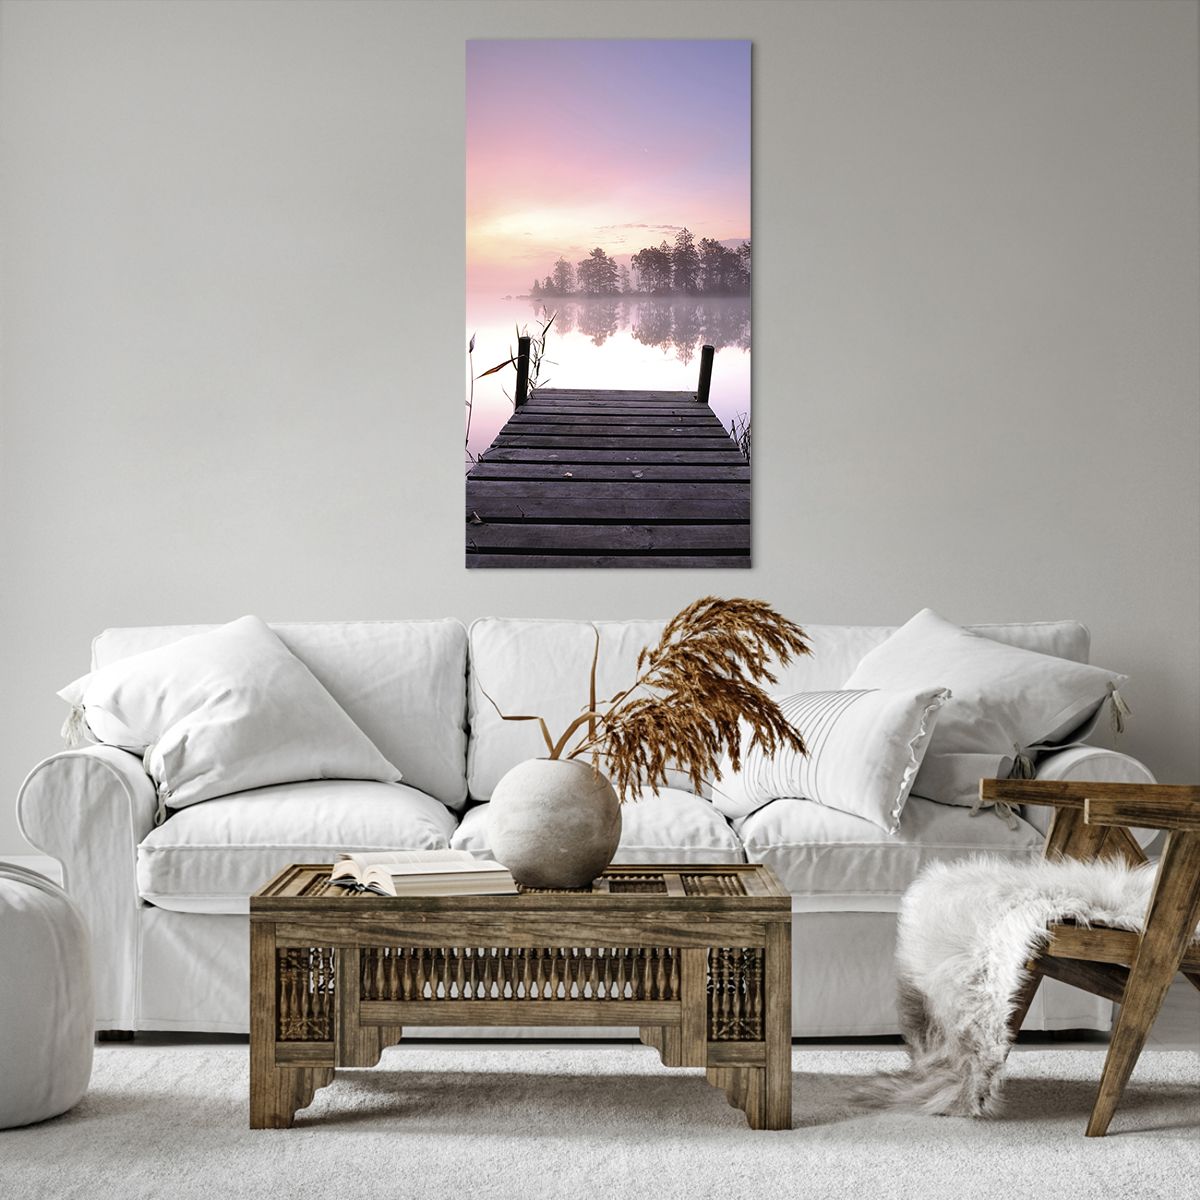 Bild auf Leinwand Landschaft, Bild auf Leinwand Sonnenaufgang, Bild auf Leinwand See, Bild auf Leinwand Holzbrücke, Bild auf Leinwand Natur